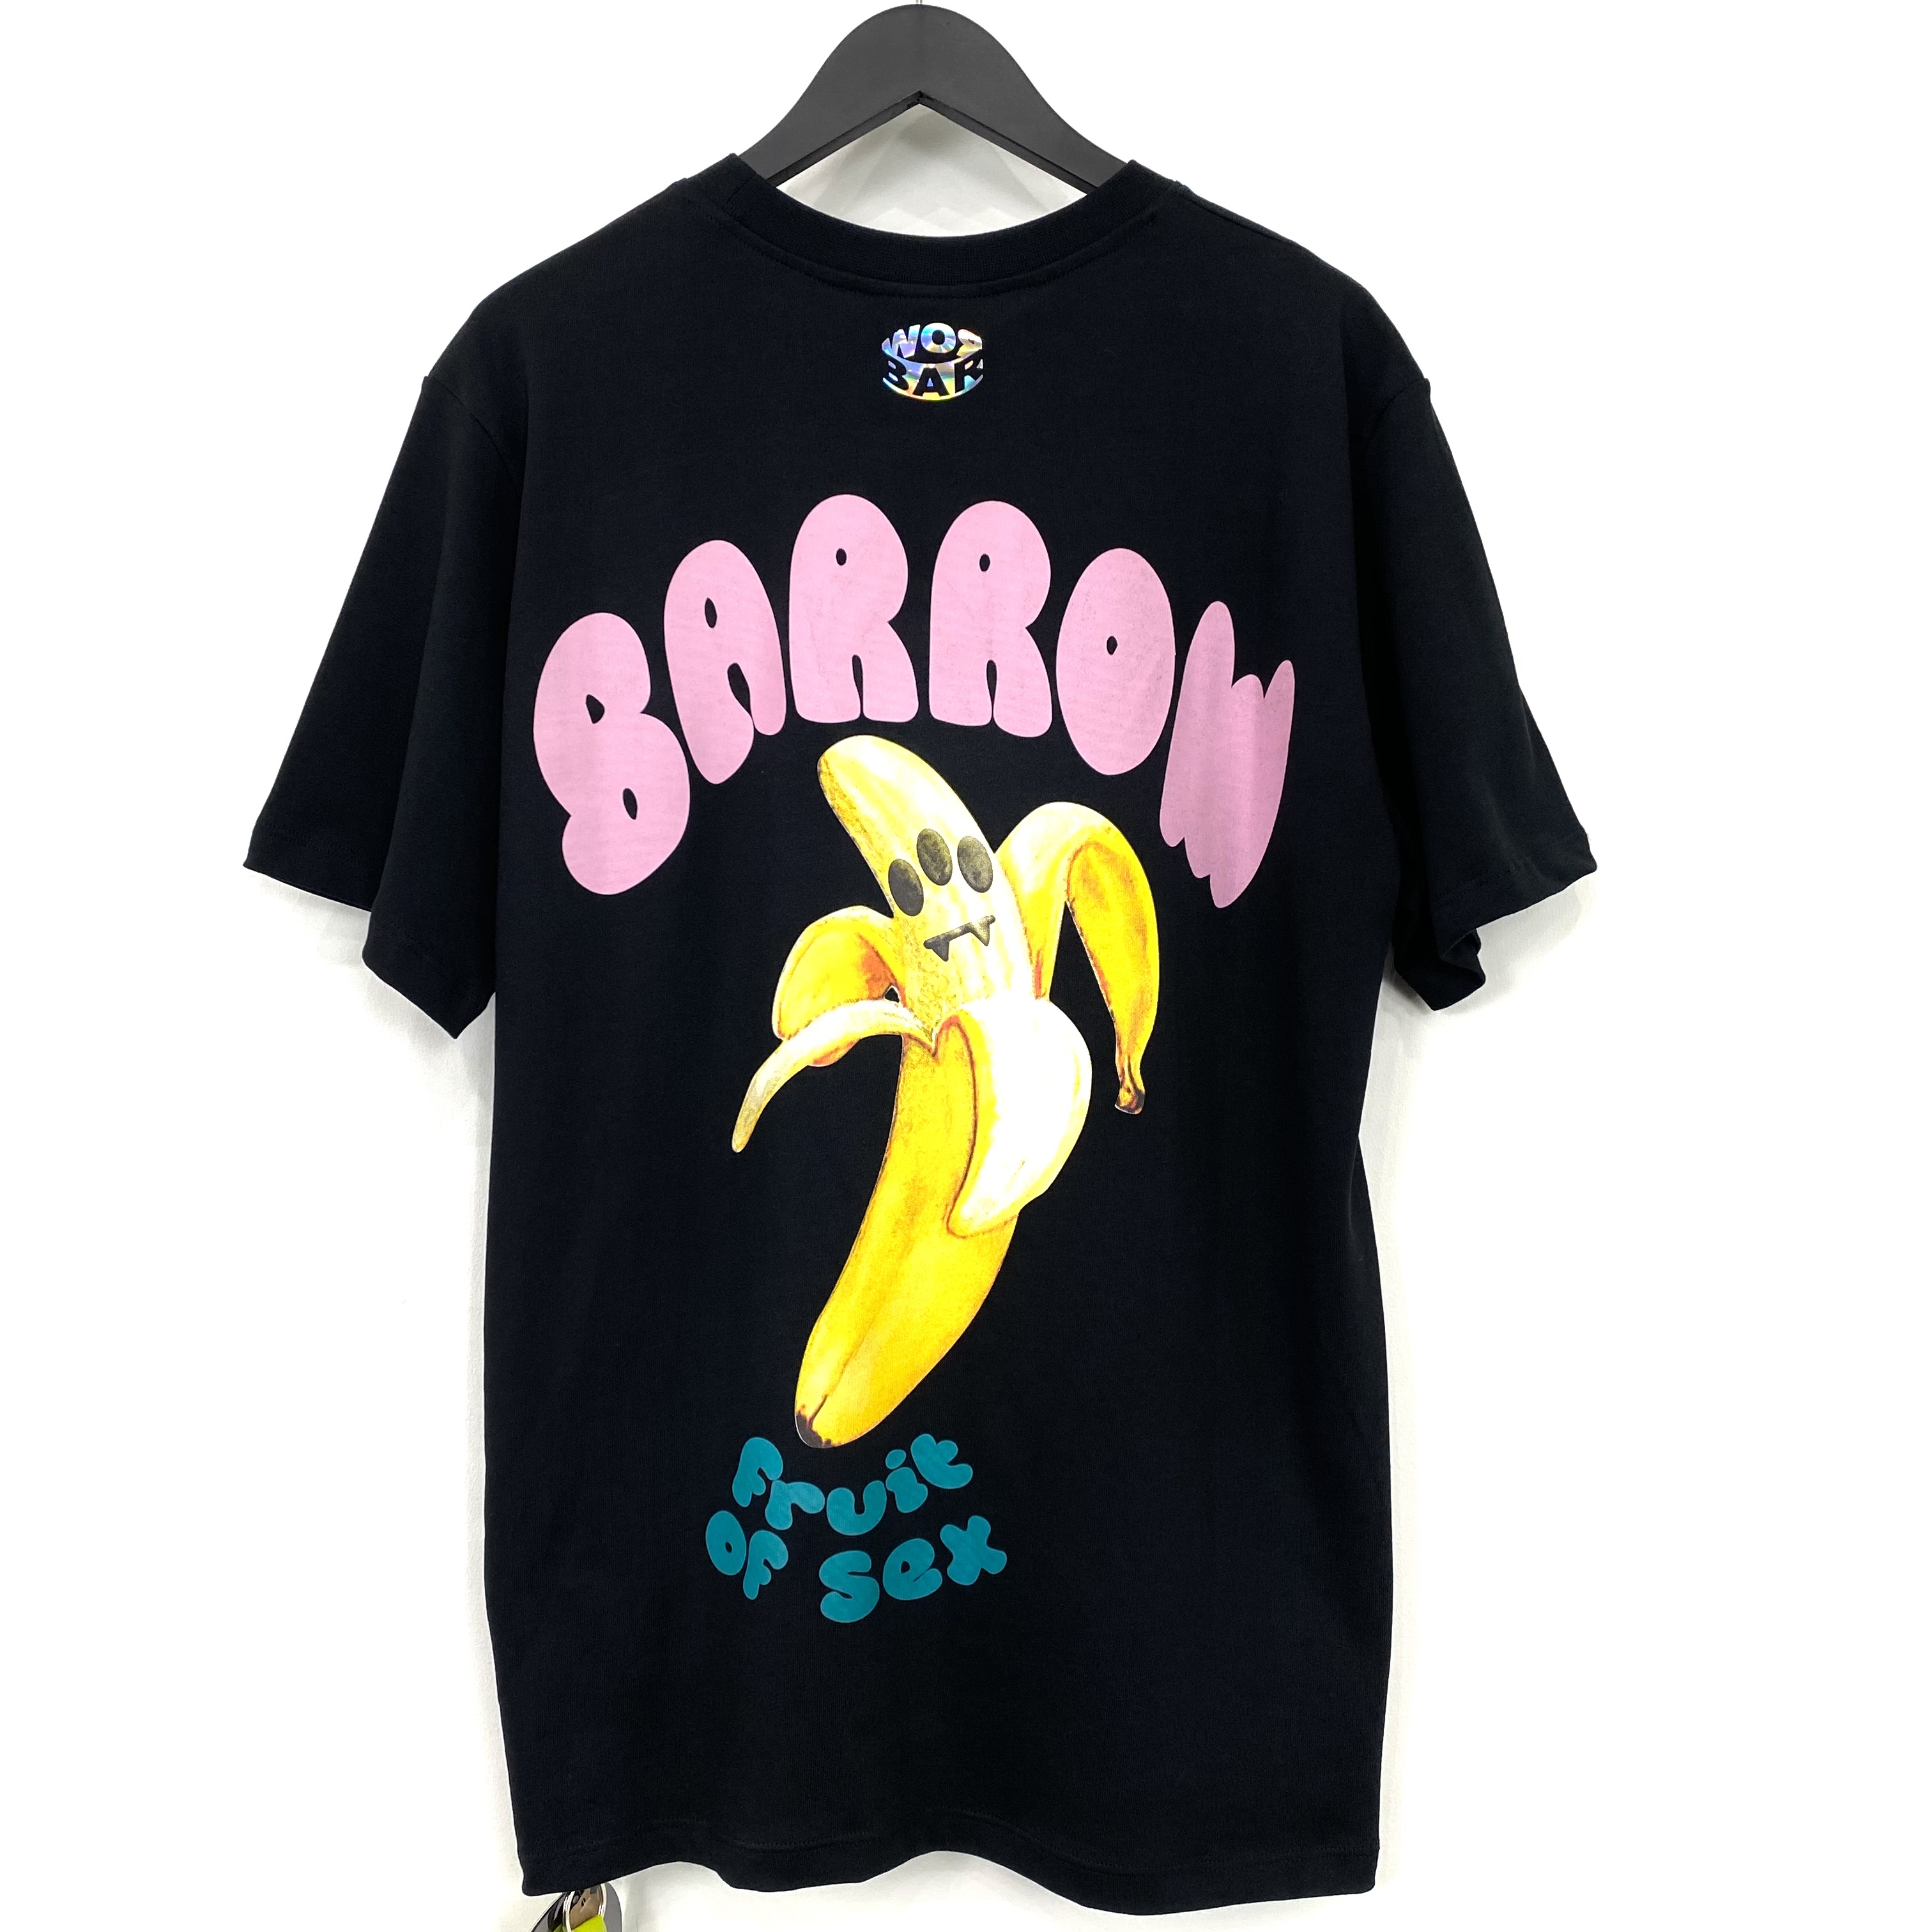 【BARROW】 バロー / BANANA Tシャツ / ブラック/ イタリア製